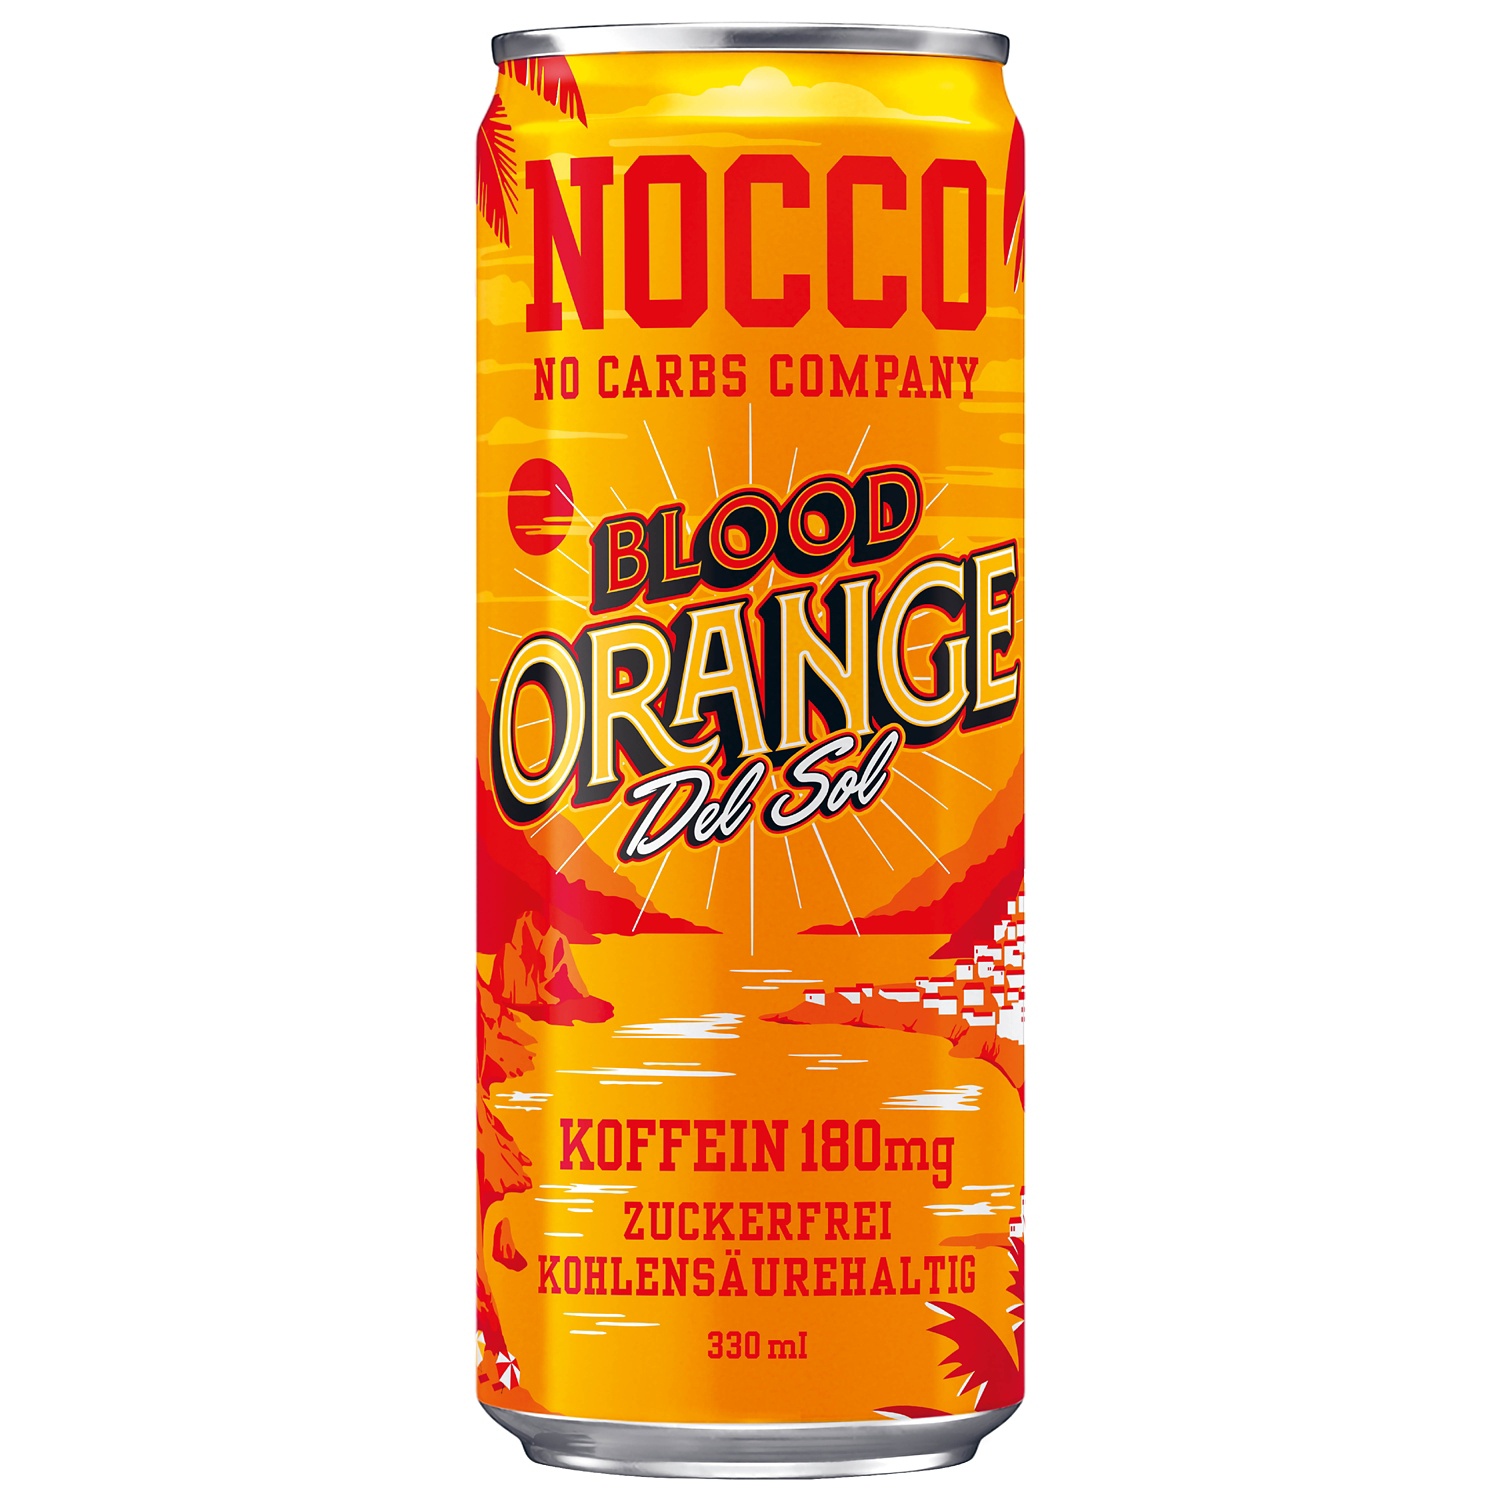 NOCCO NO CARBS COMPANY, Orange sanguine